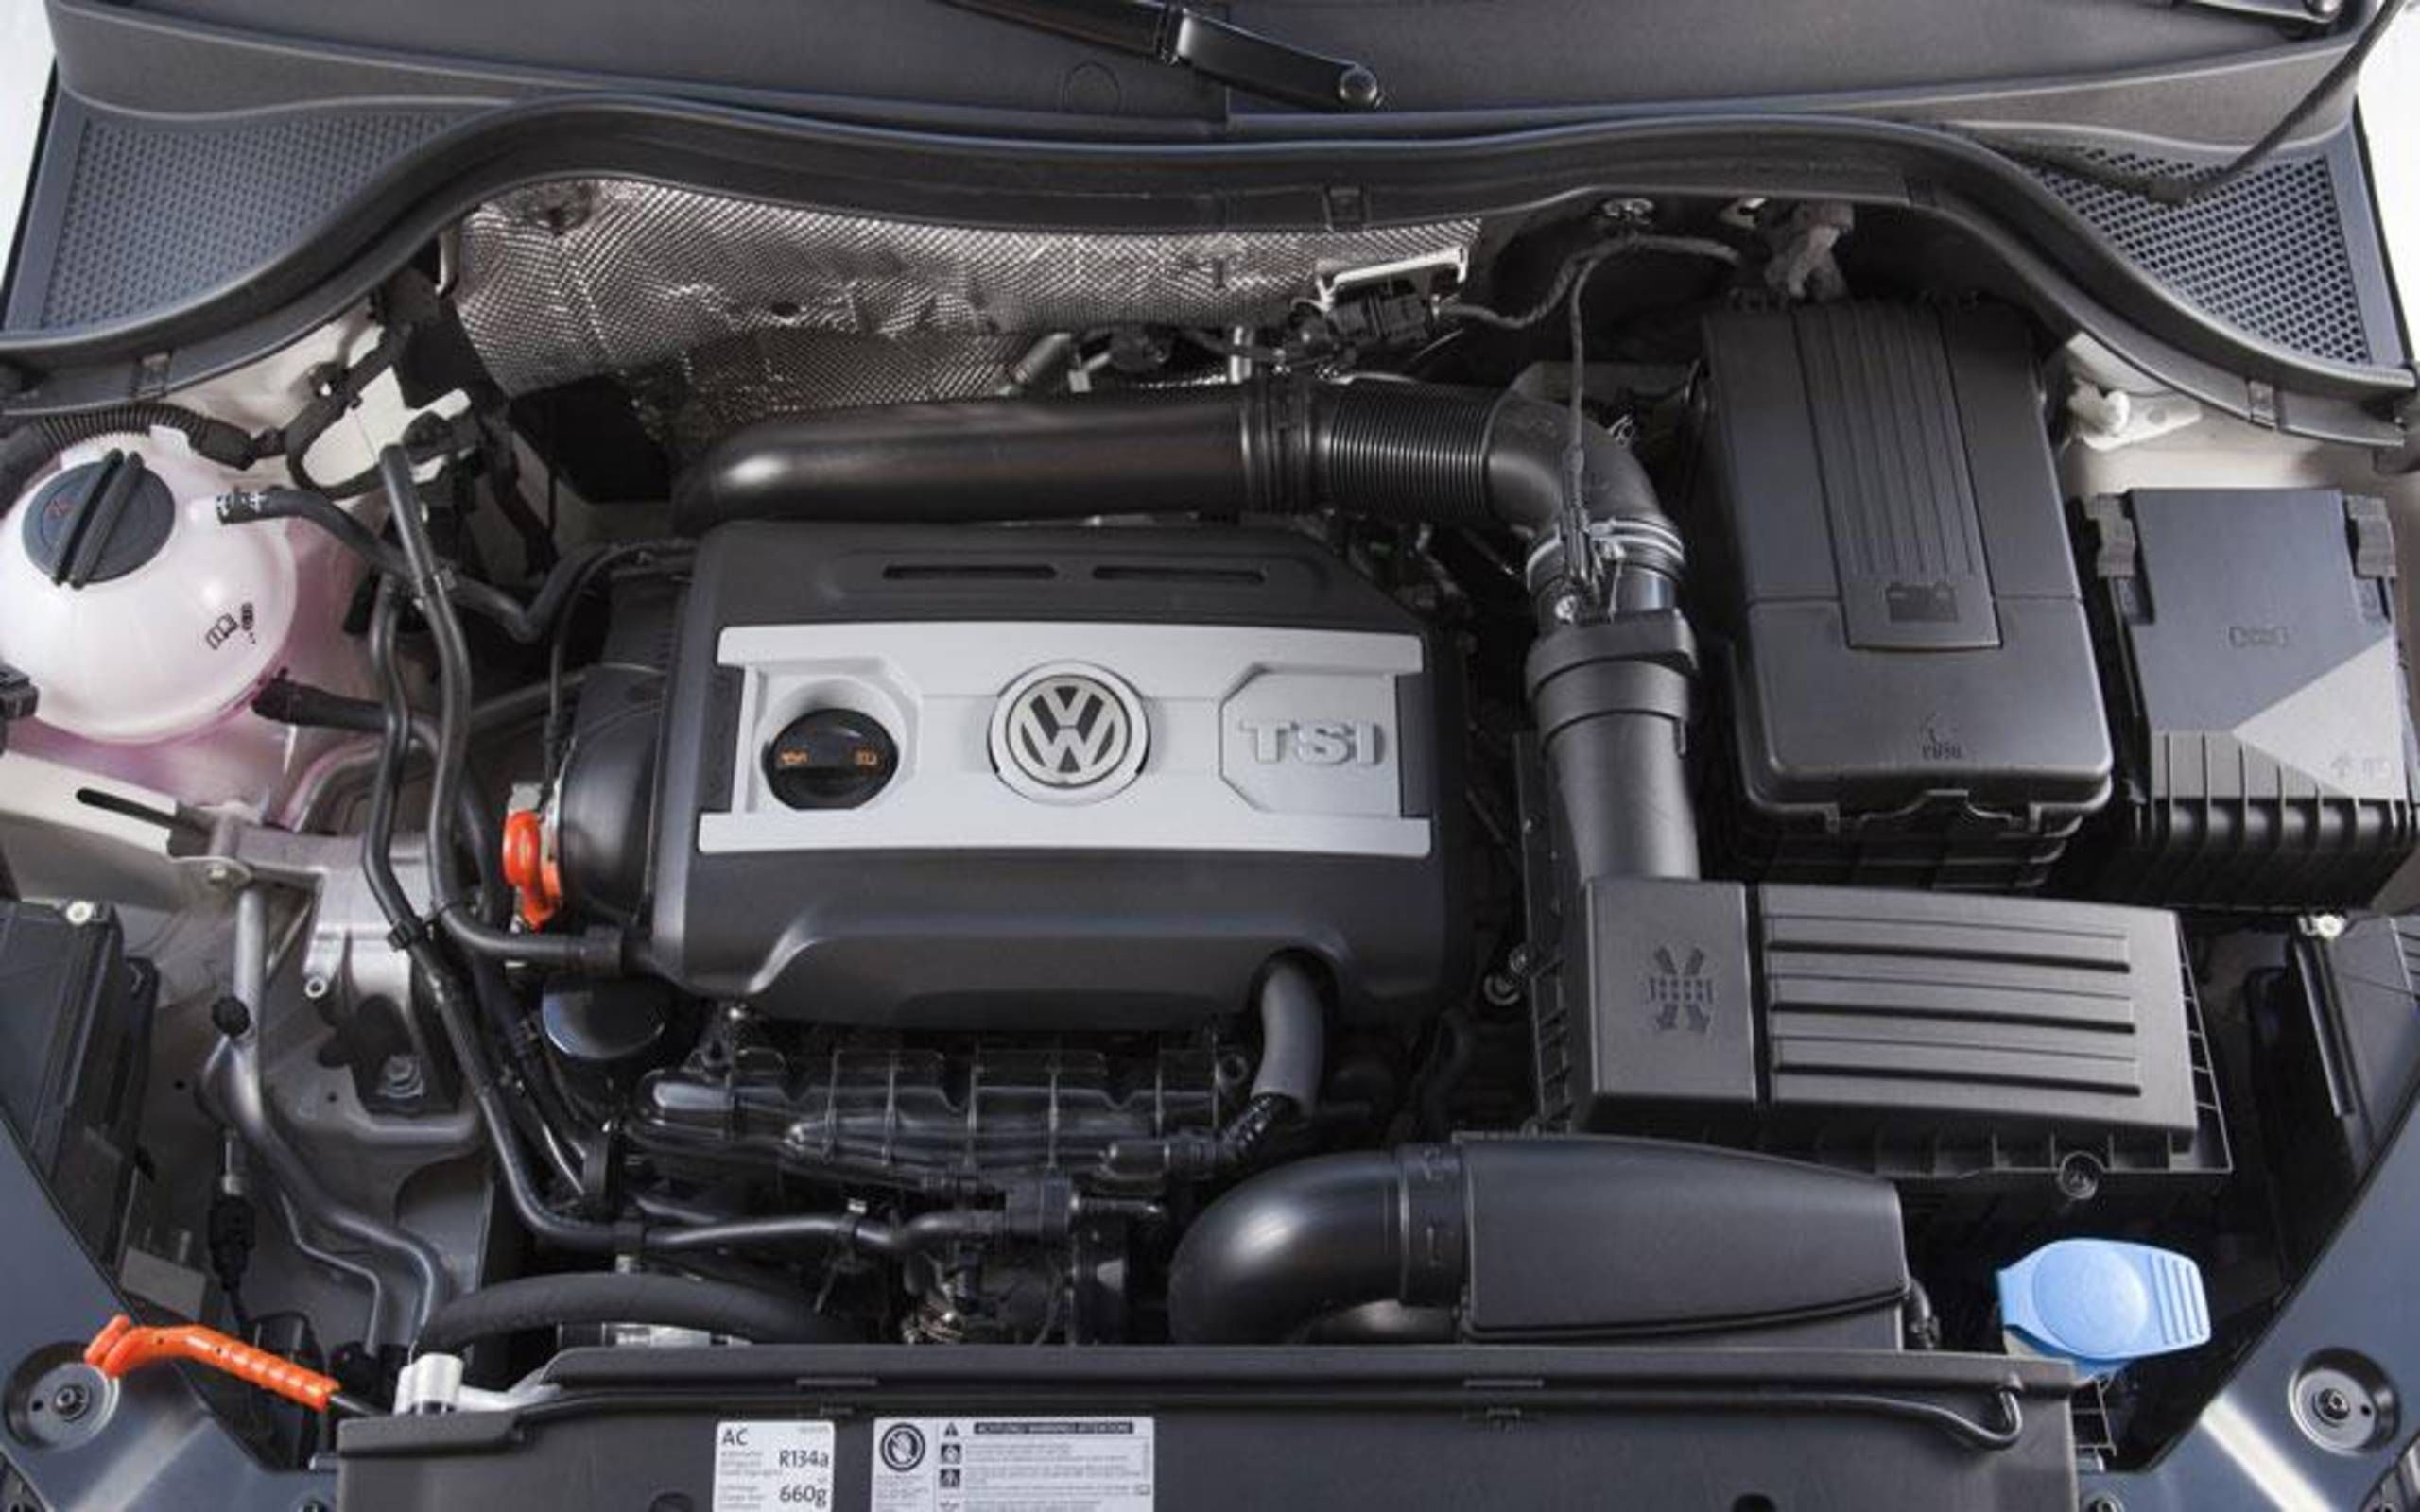 2.2 л 150 л с дизель. Volkswagen Tiguan 1.4 (150 л.с.). Volkswagen 1.4 TSI 150 Л.С. Двигатель Volkswagen Tiguan 1.4 TSI. Двигатель Фольксваген Тигуан 1.4 AMT.